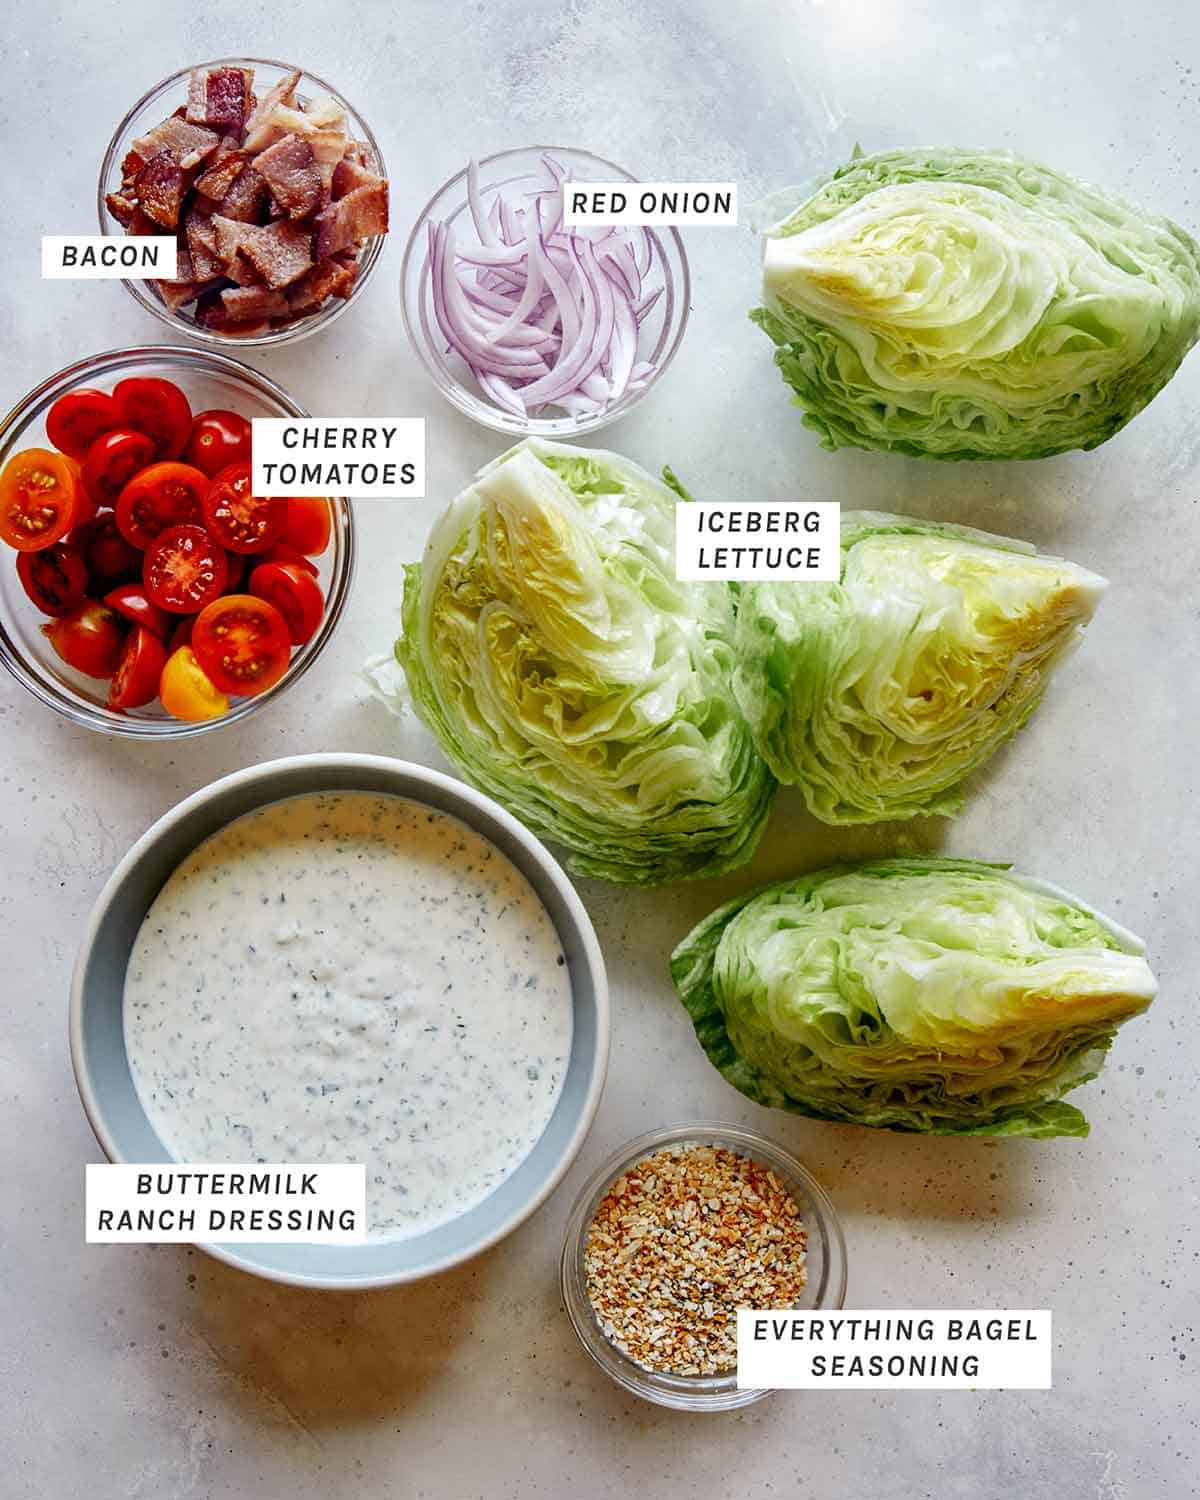 Wedge Salad recipe ingredients. 